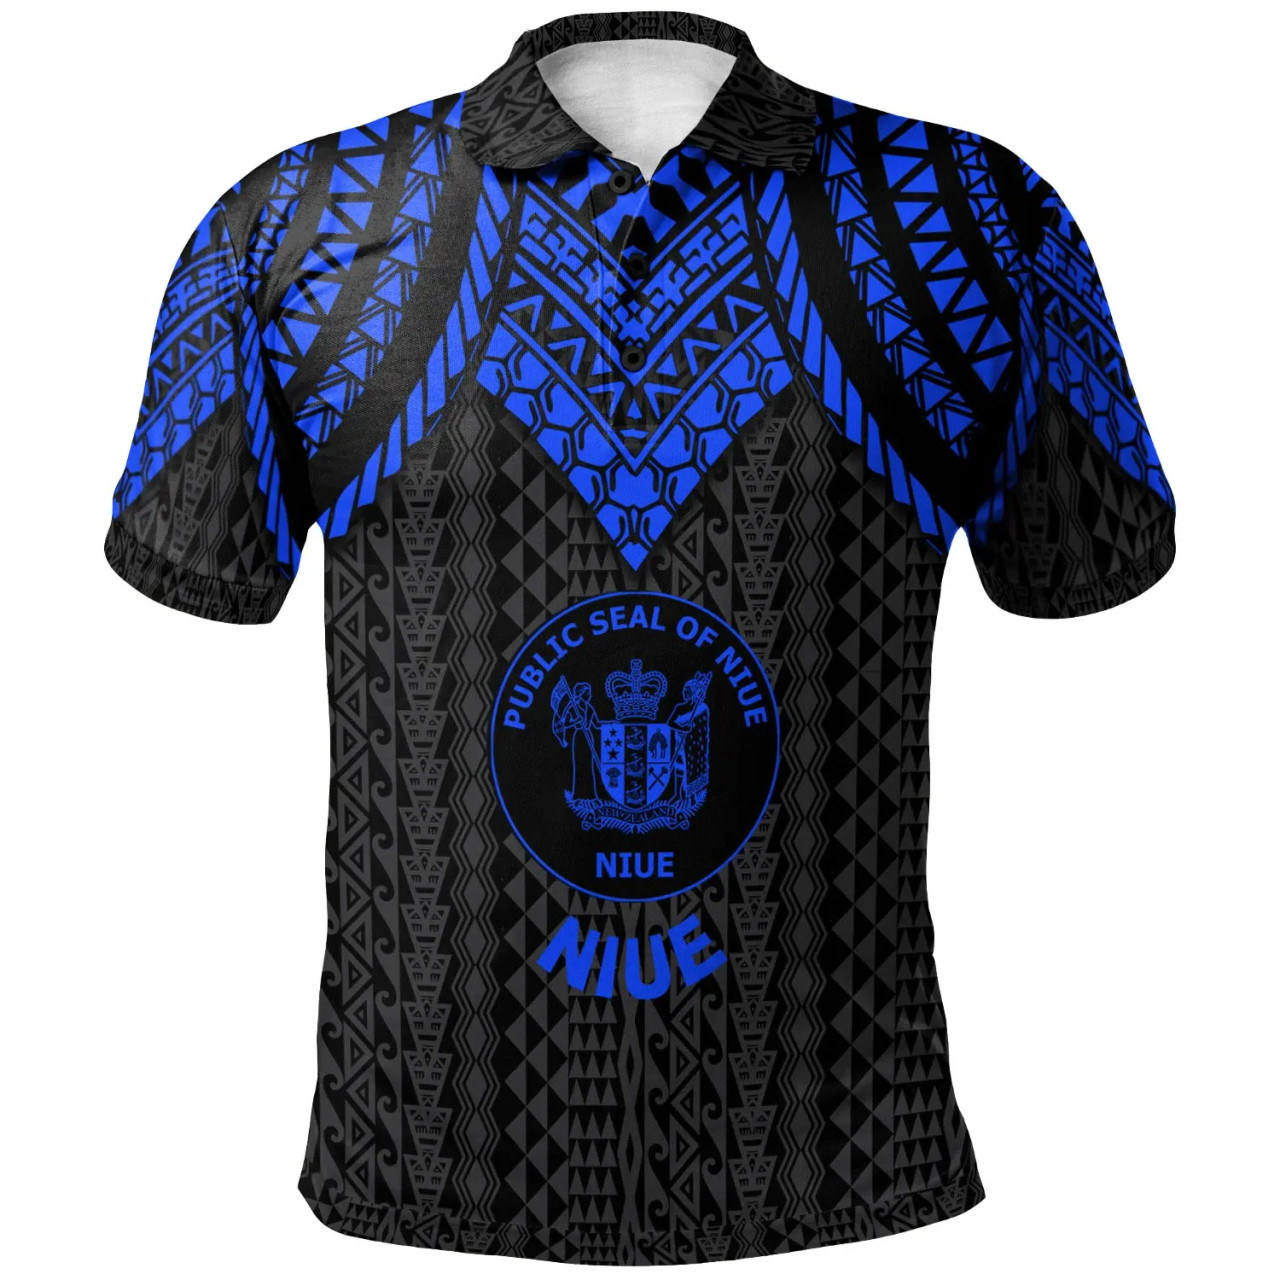 Niue Polo Shirt - Polynesian Armor Style Blue 1